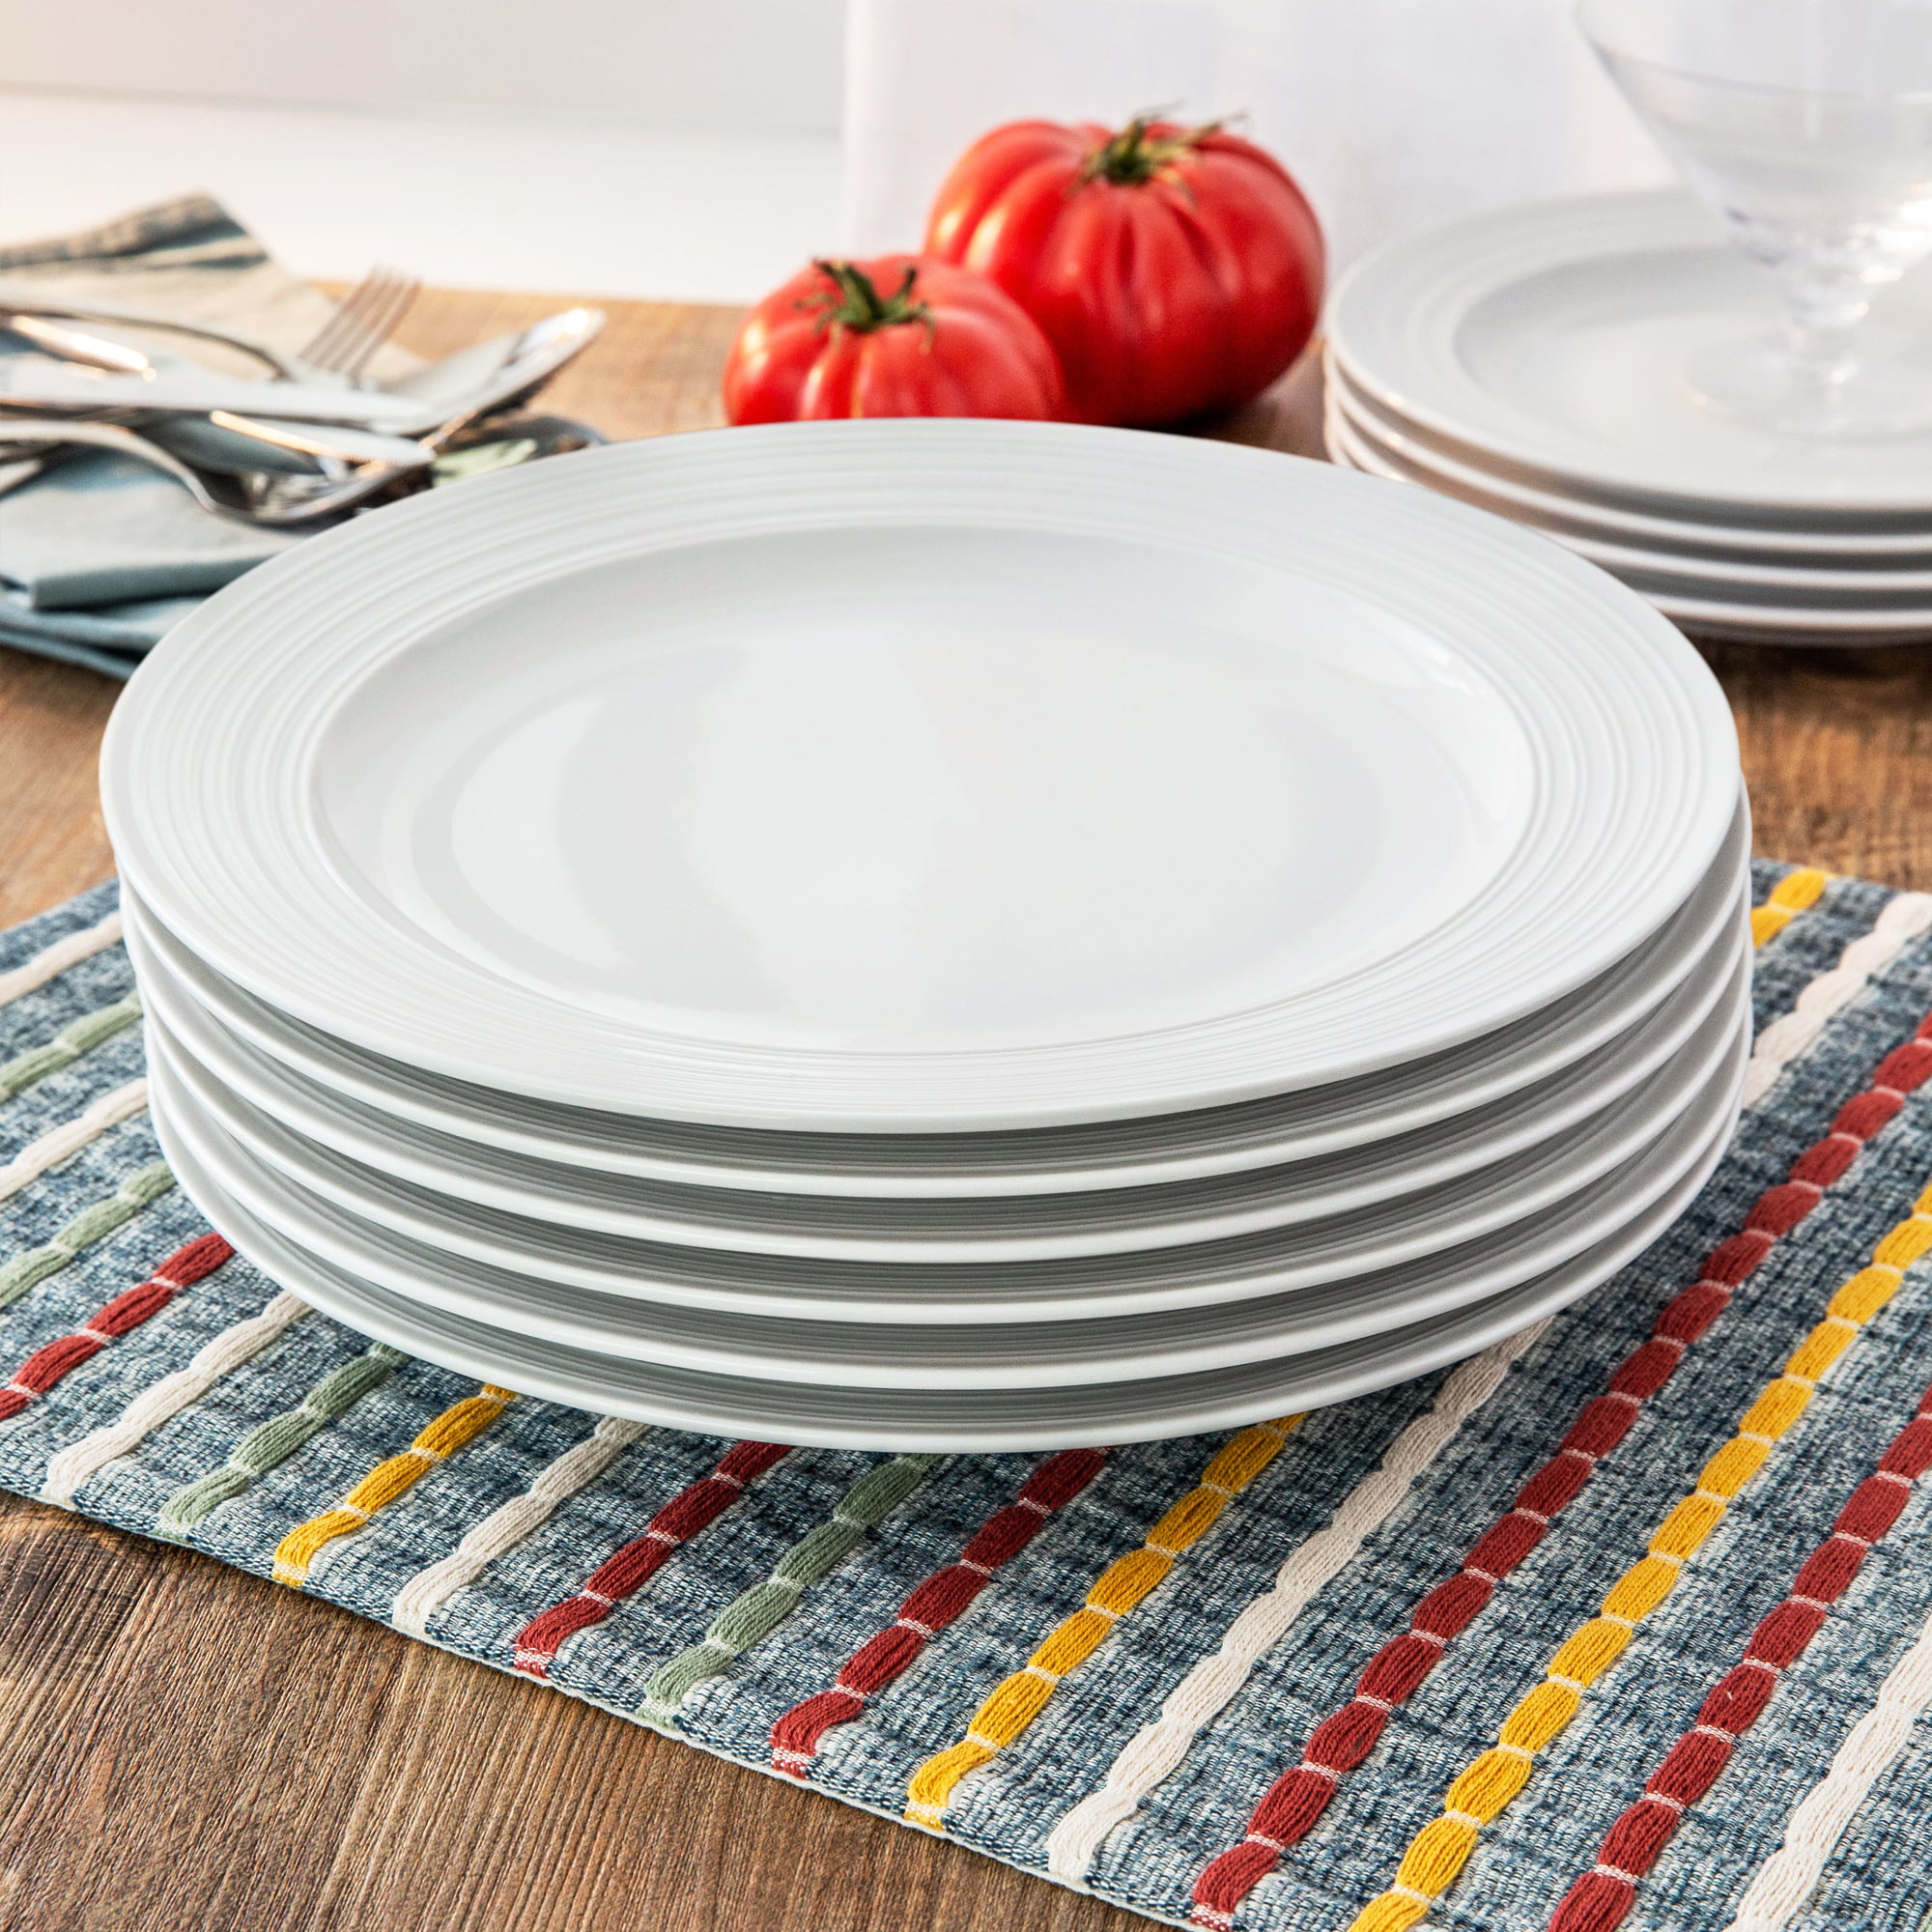 Better Homes \u0026 Gardens Porcelain Anniston Textured Edge Dinner Plates, Set of 12, White ...